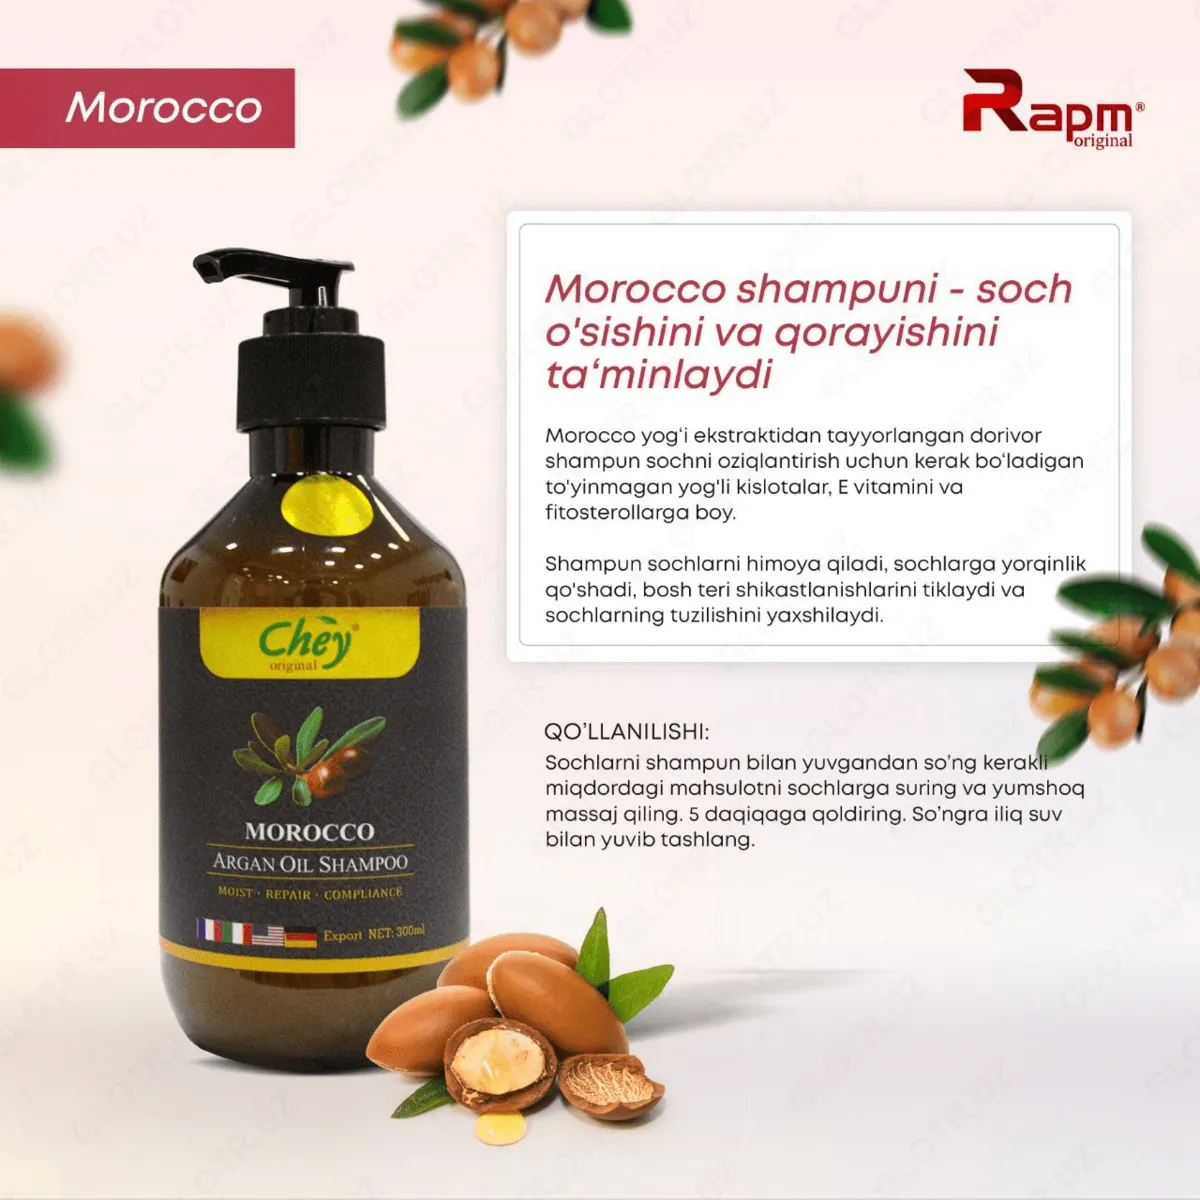 Шампунь с аргановым маслом 'Marocco' - Rapm Chey#1